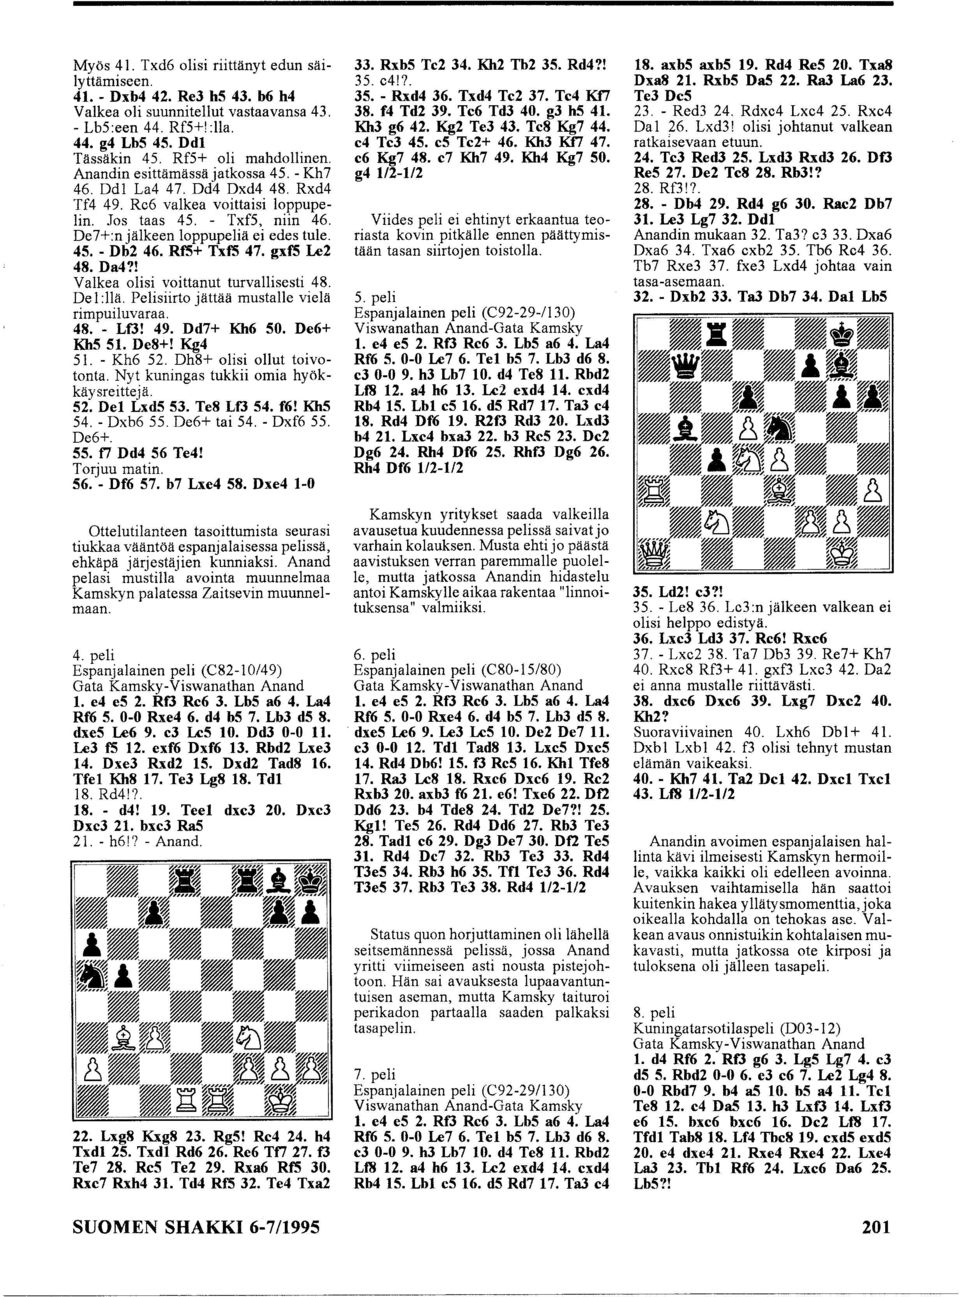 De7+:njälkeen loppupeliä ei edes tule. 45. - Db2 46. Rf5+ TxfS 47. gxfs Le2 48. Da4?! Valkea olisi voittanut turvallisesti 48. De 1 :llä. Pelisiirto jättää mustalle vielä rimpuiluvaraa. 48. - Lf3! 49.